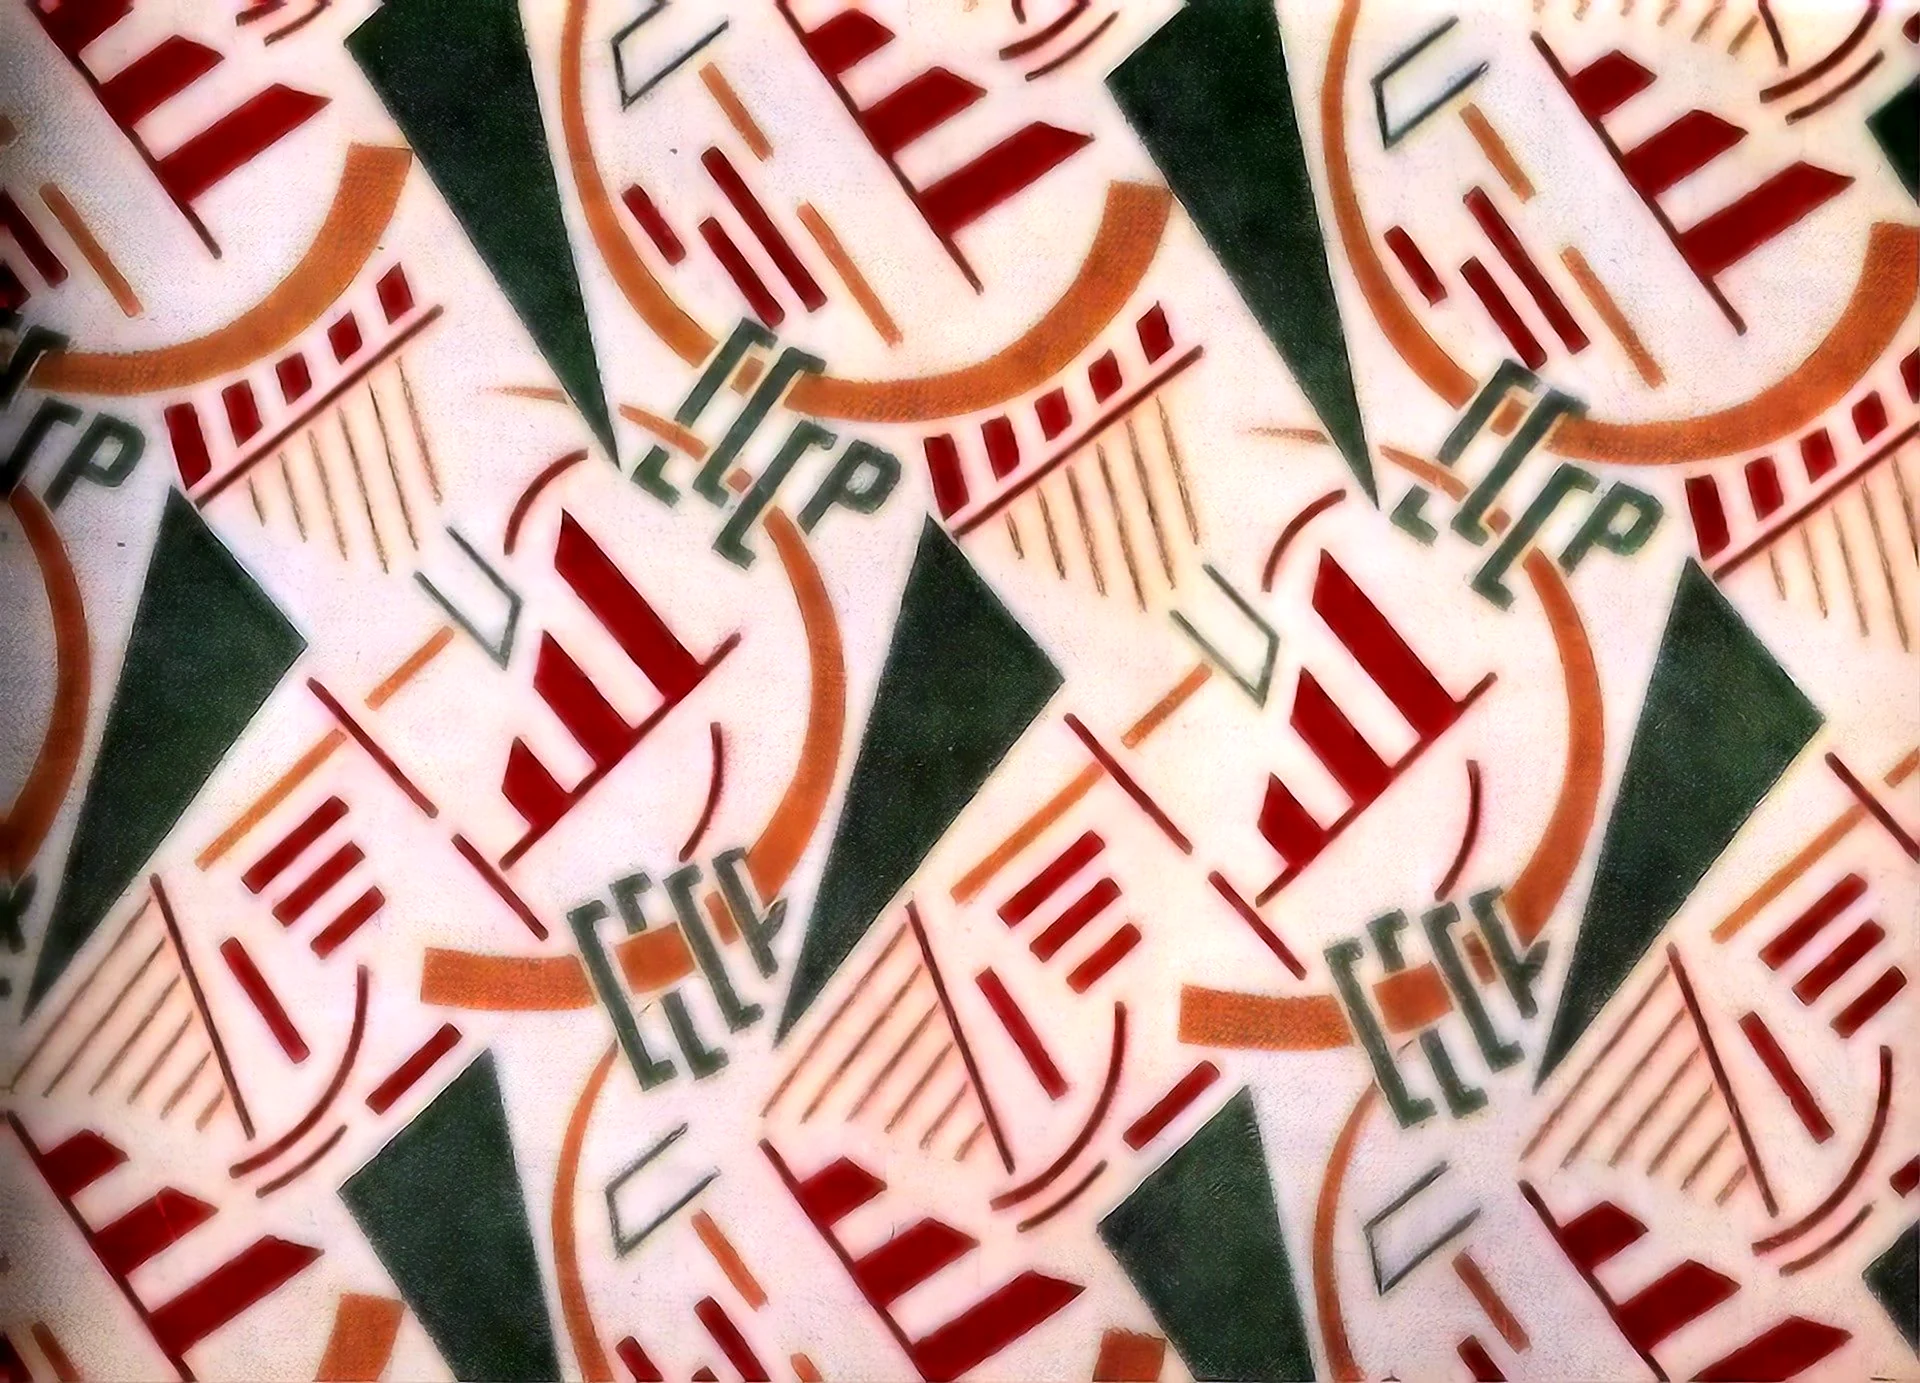 Агитационный текстиль 20-30 годы СССР